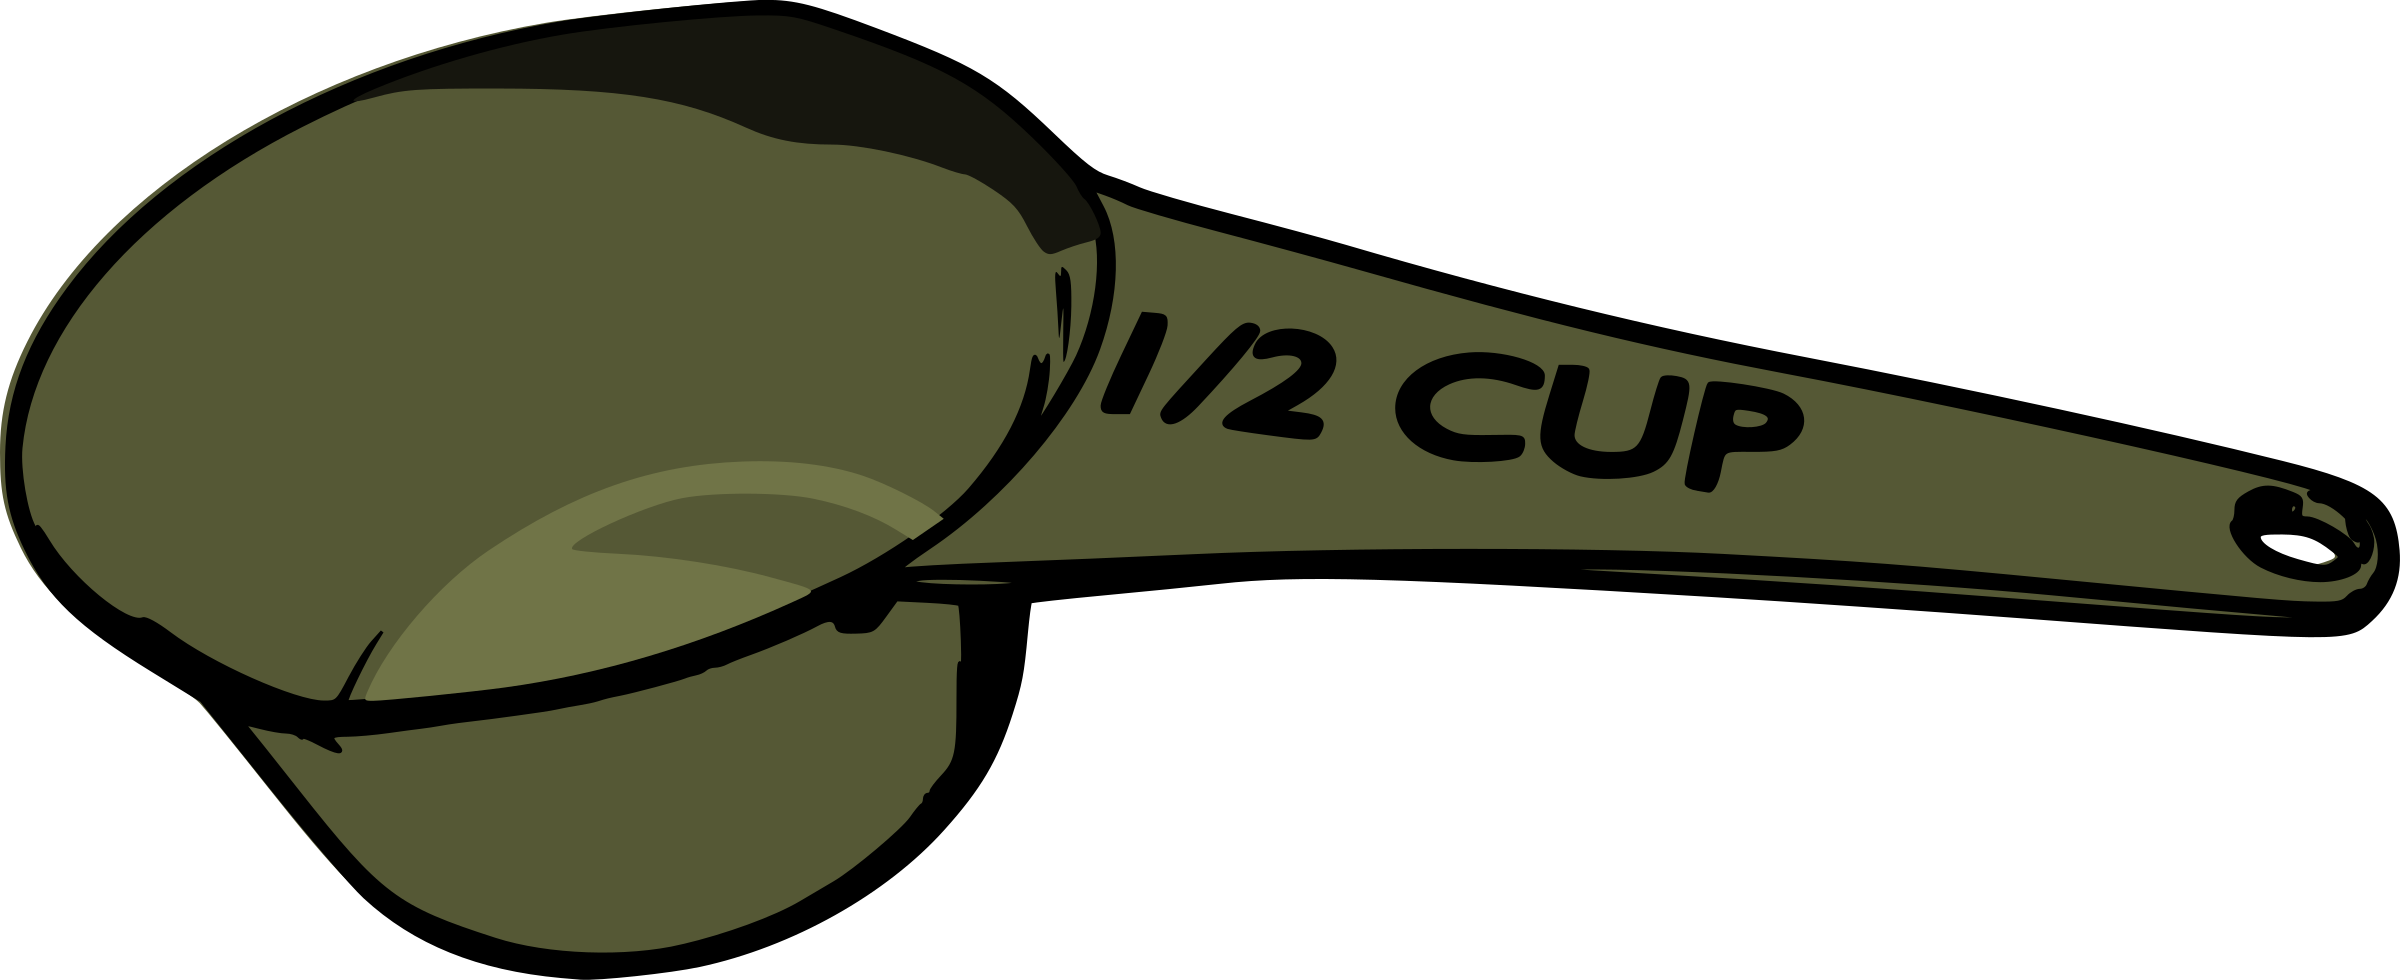 Measuring Spoon Measuring Cup Teaspoon Clip Art - Measuring 1 2 Cup - Png Download (2400x980), Png Download